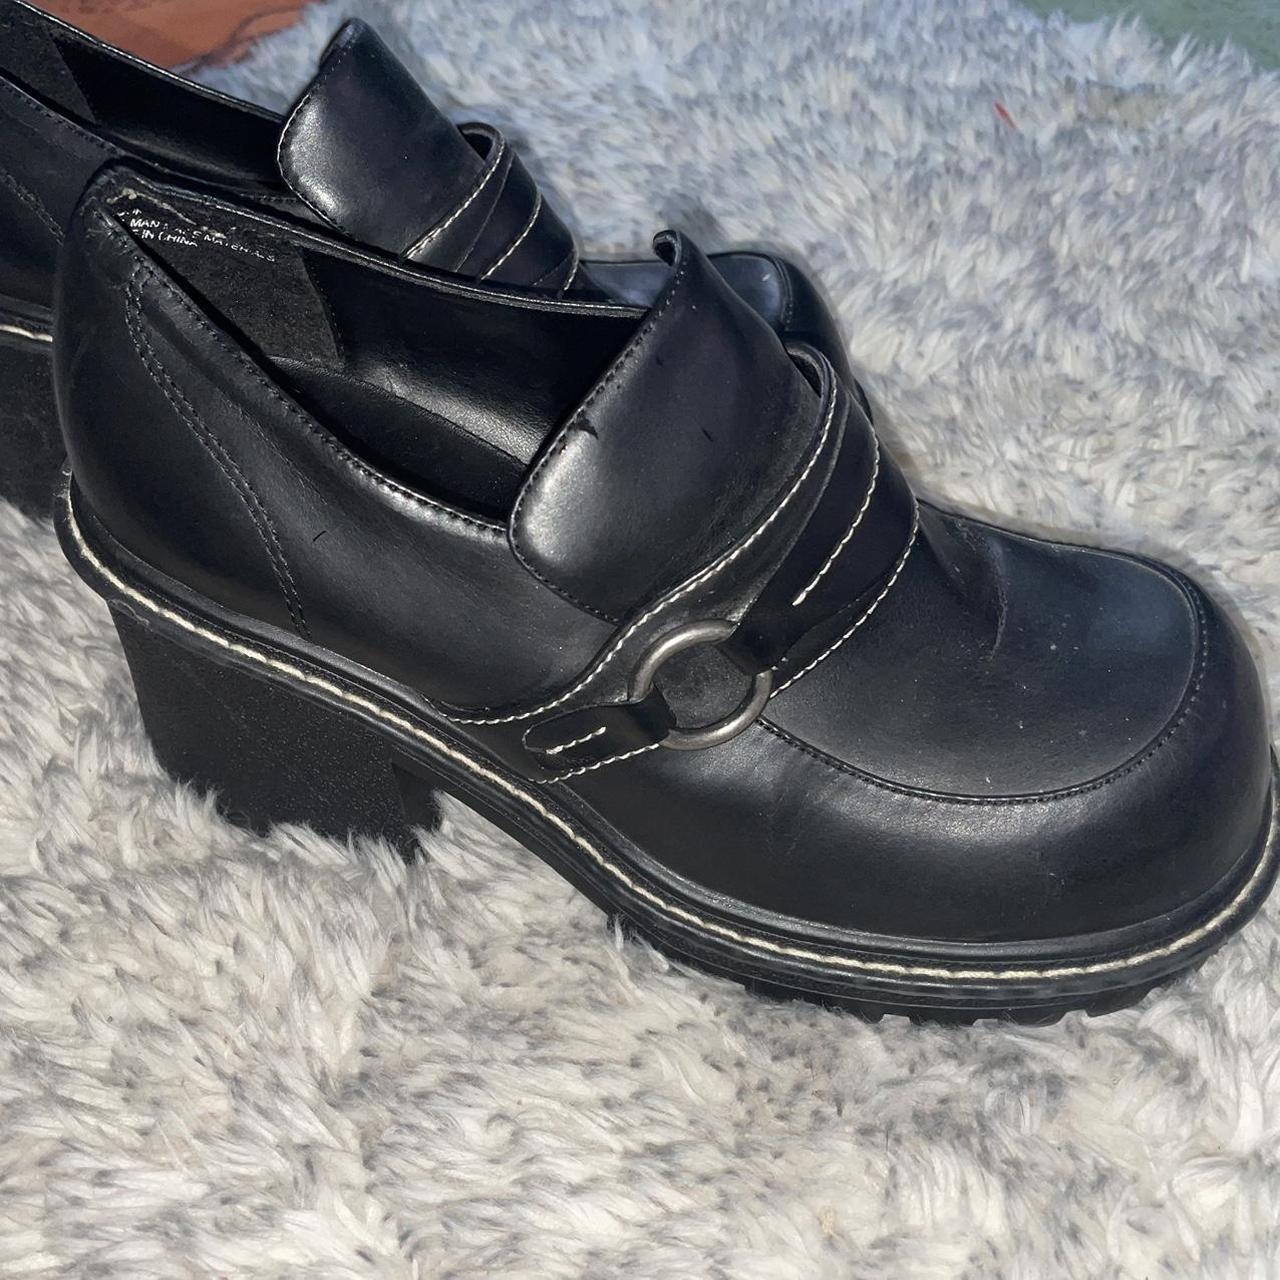 Off brand Steve Madden Heel Loafers Size 8 - Depop